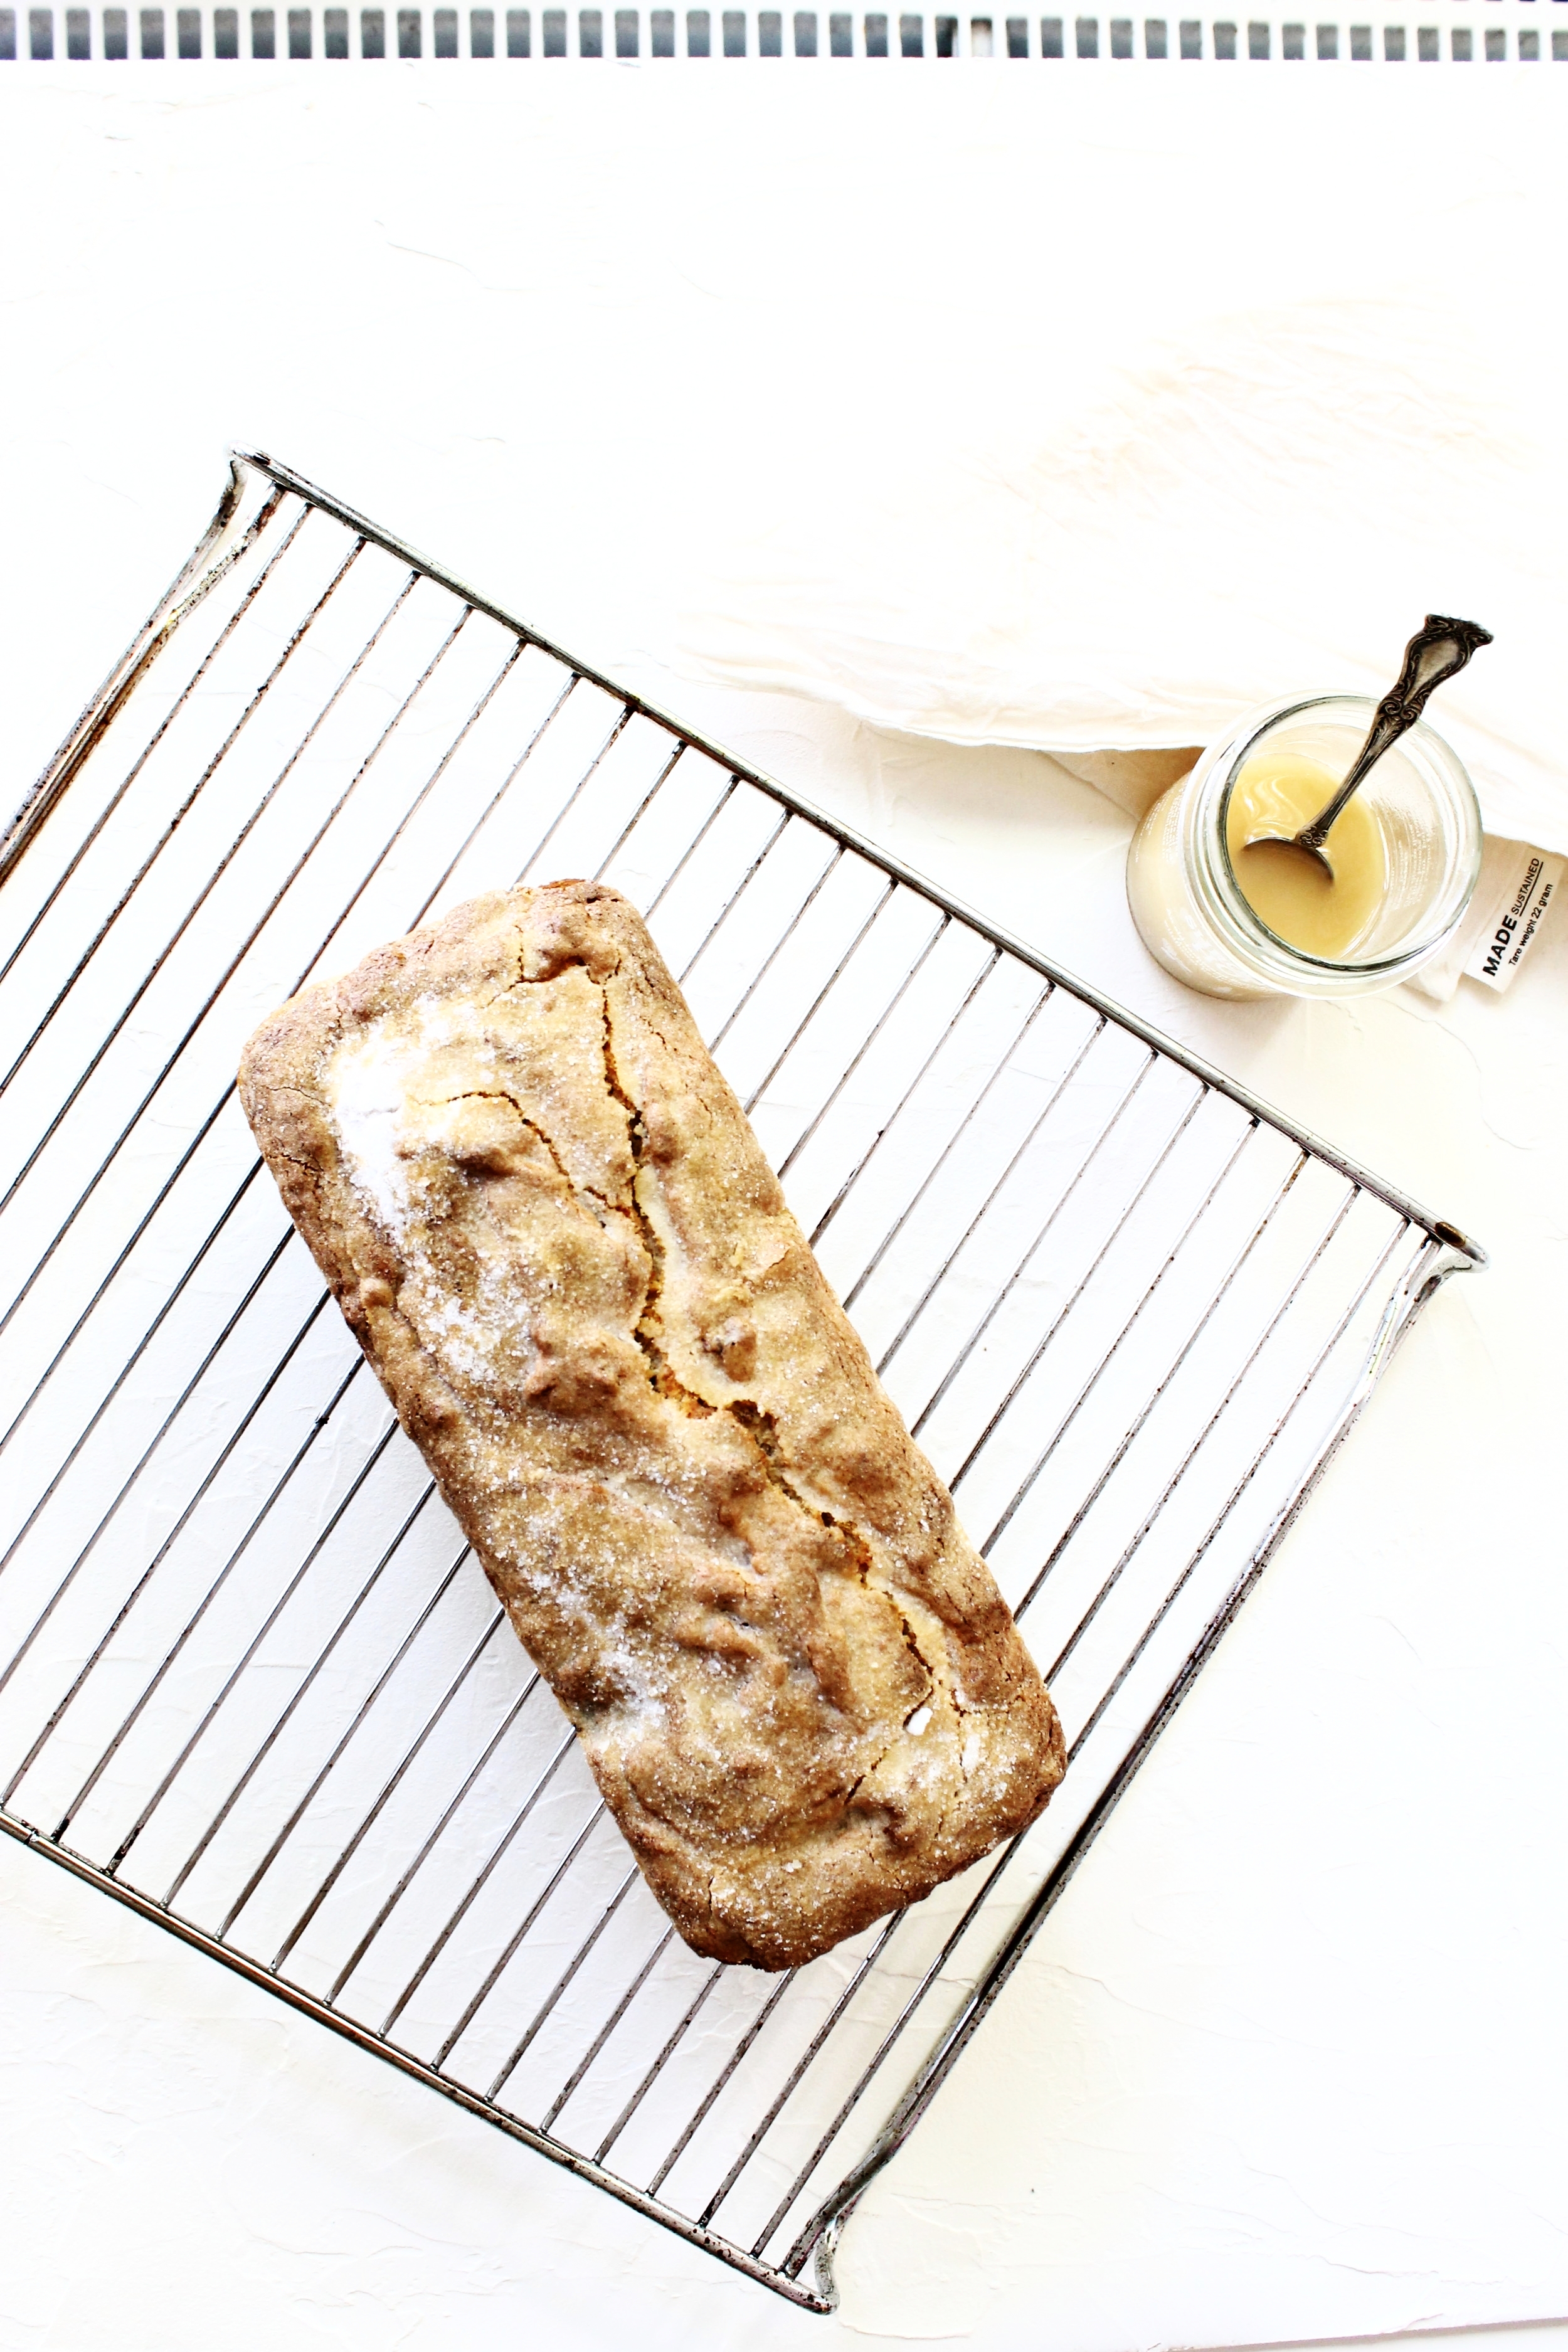 Gluten free date and banana bread | Beloved Kitchen